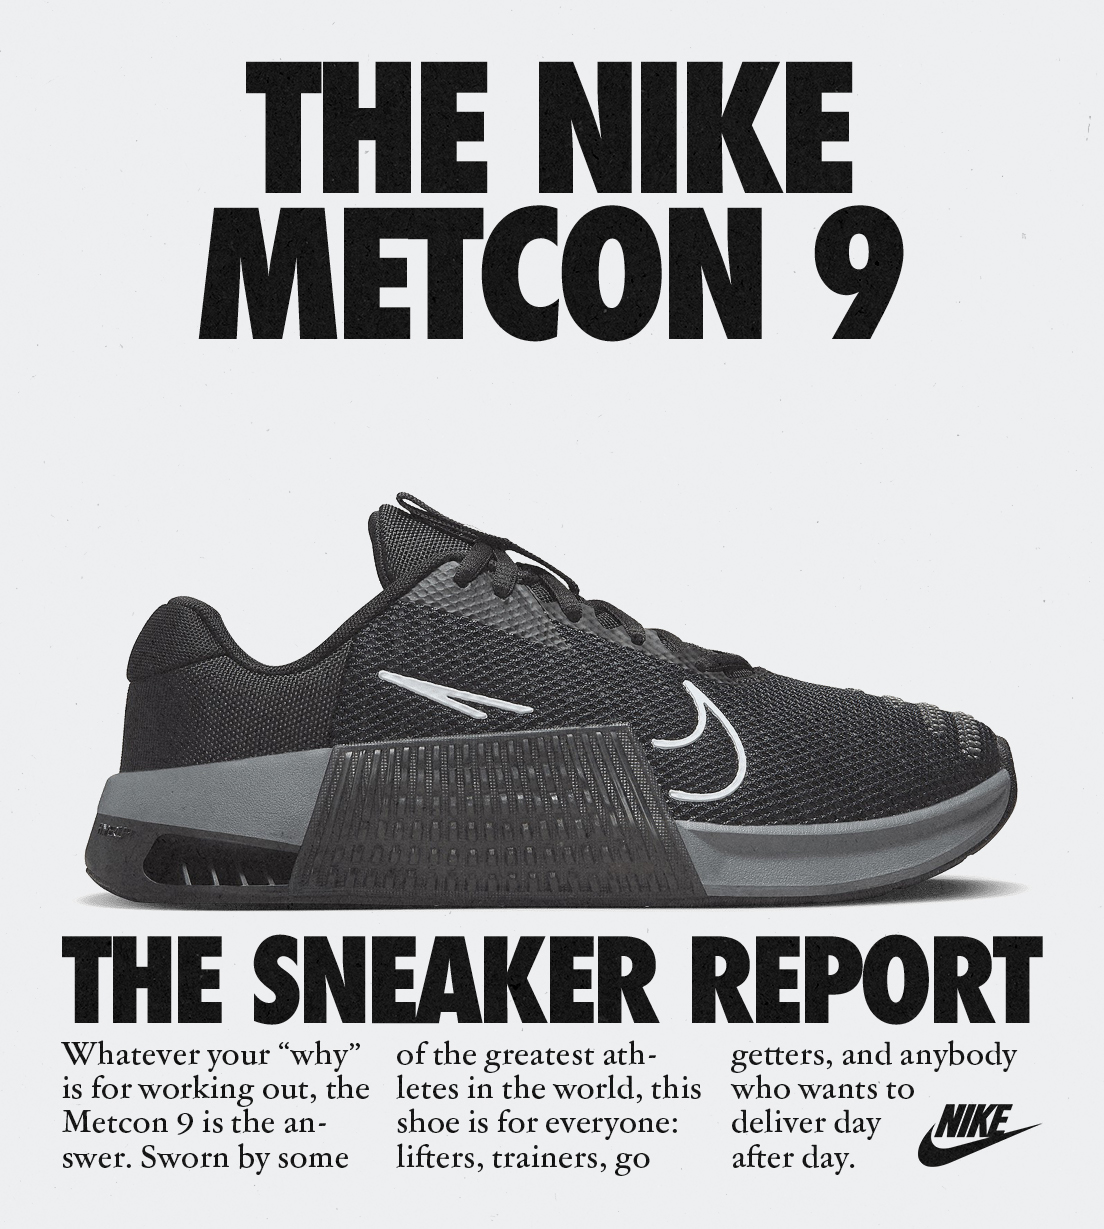 Nike METCON 9